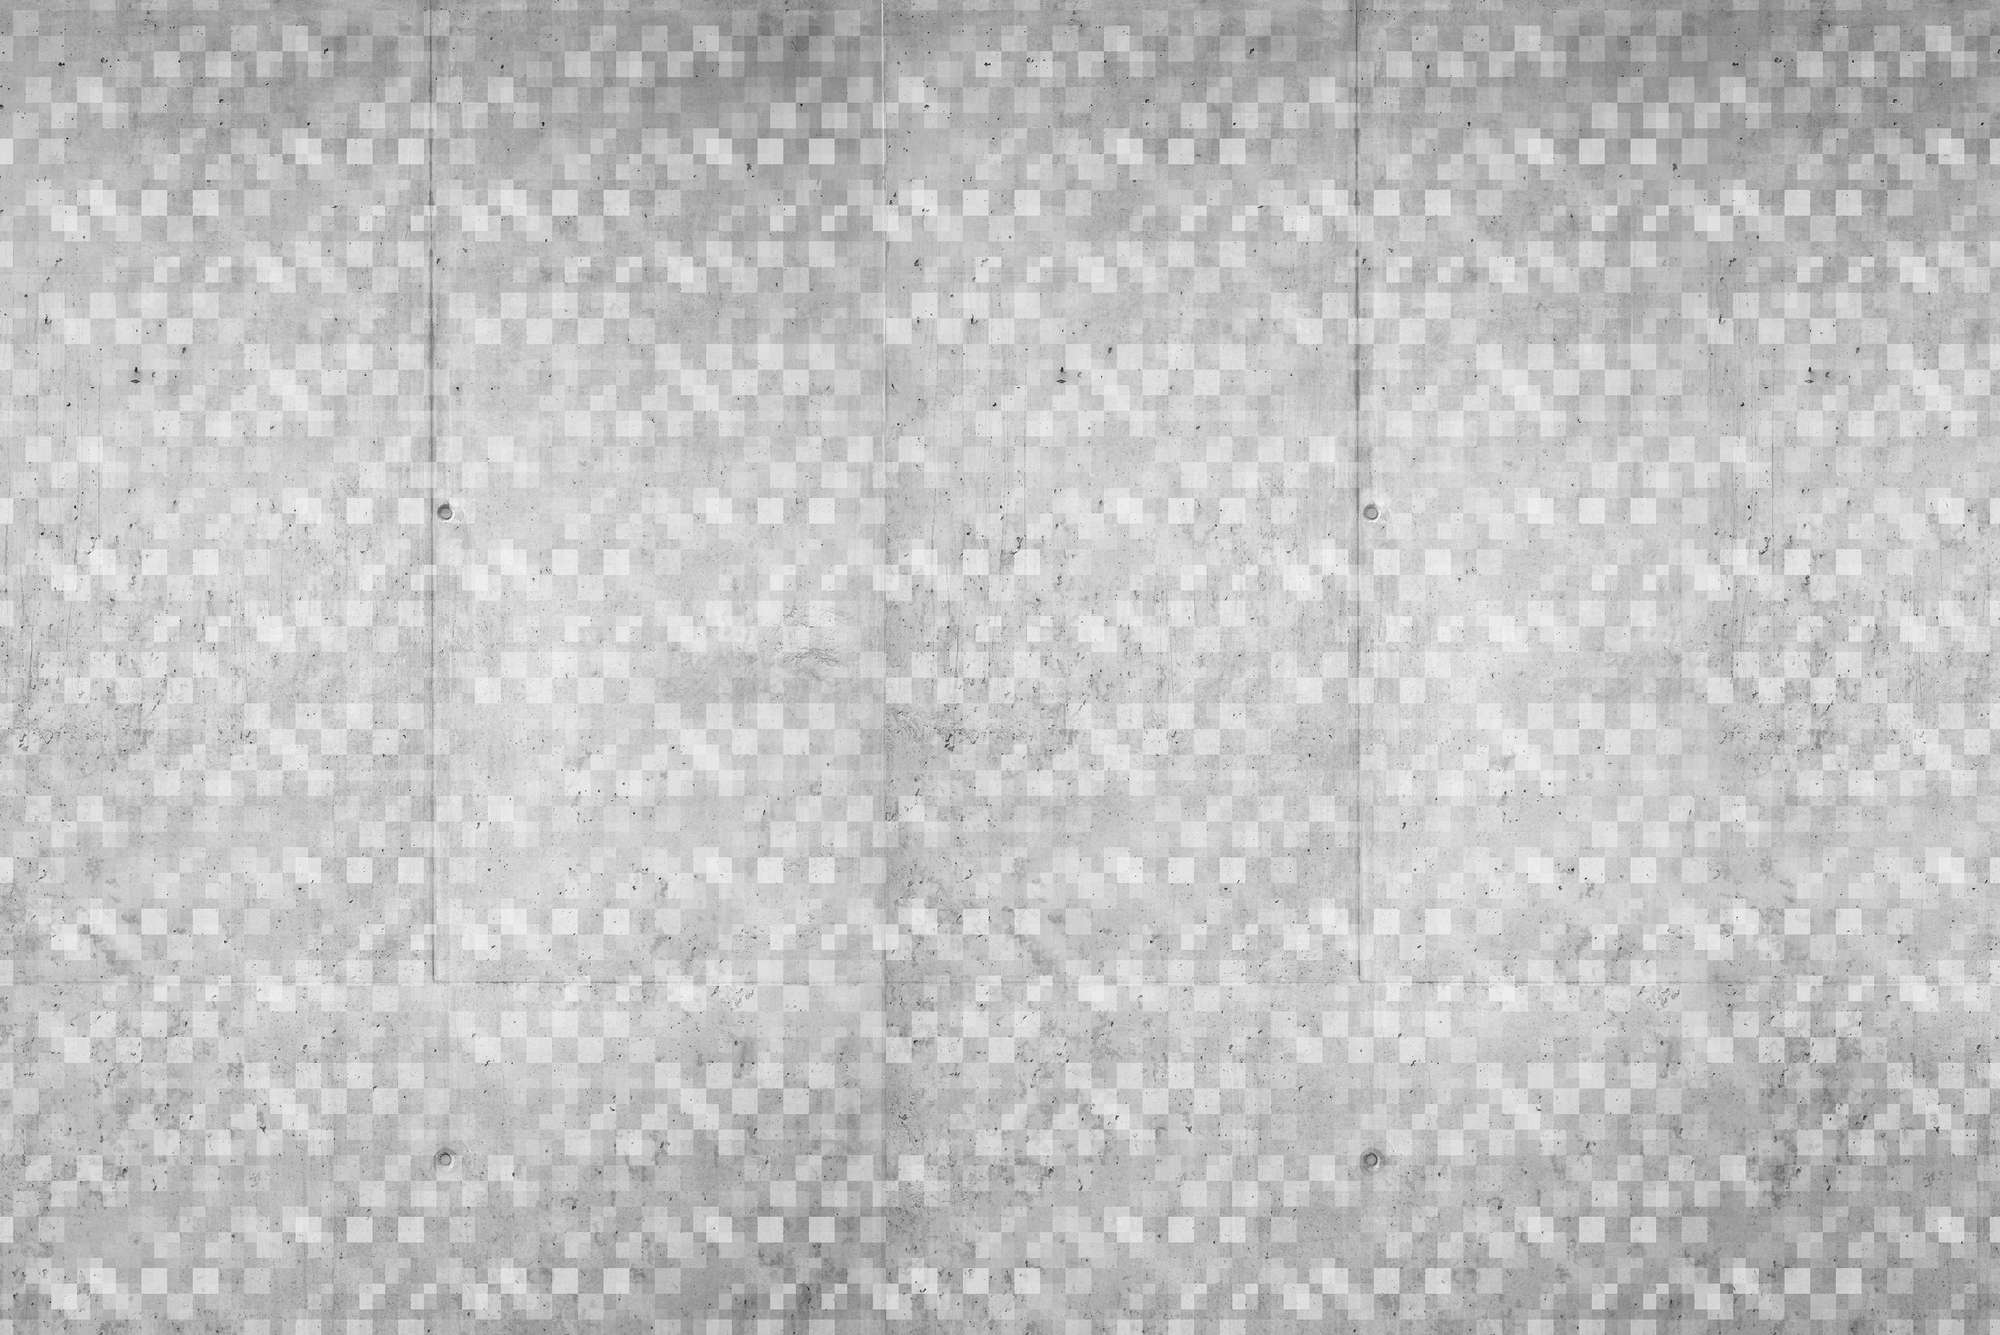             Papel pintado gráfico con motivo de cubo superpuesto gris sobre vellón liso de primera calidad
        